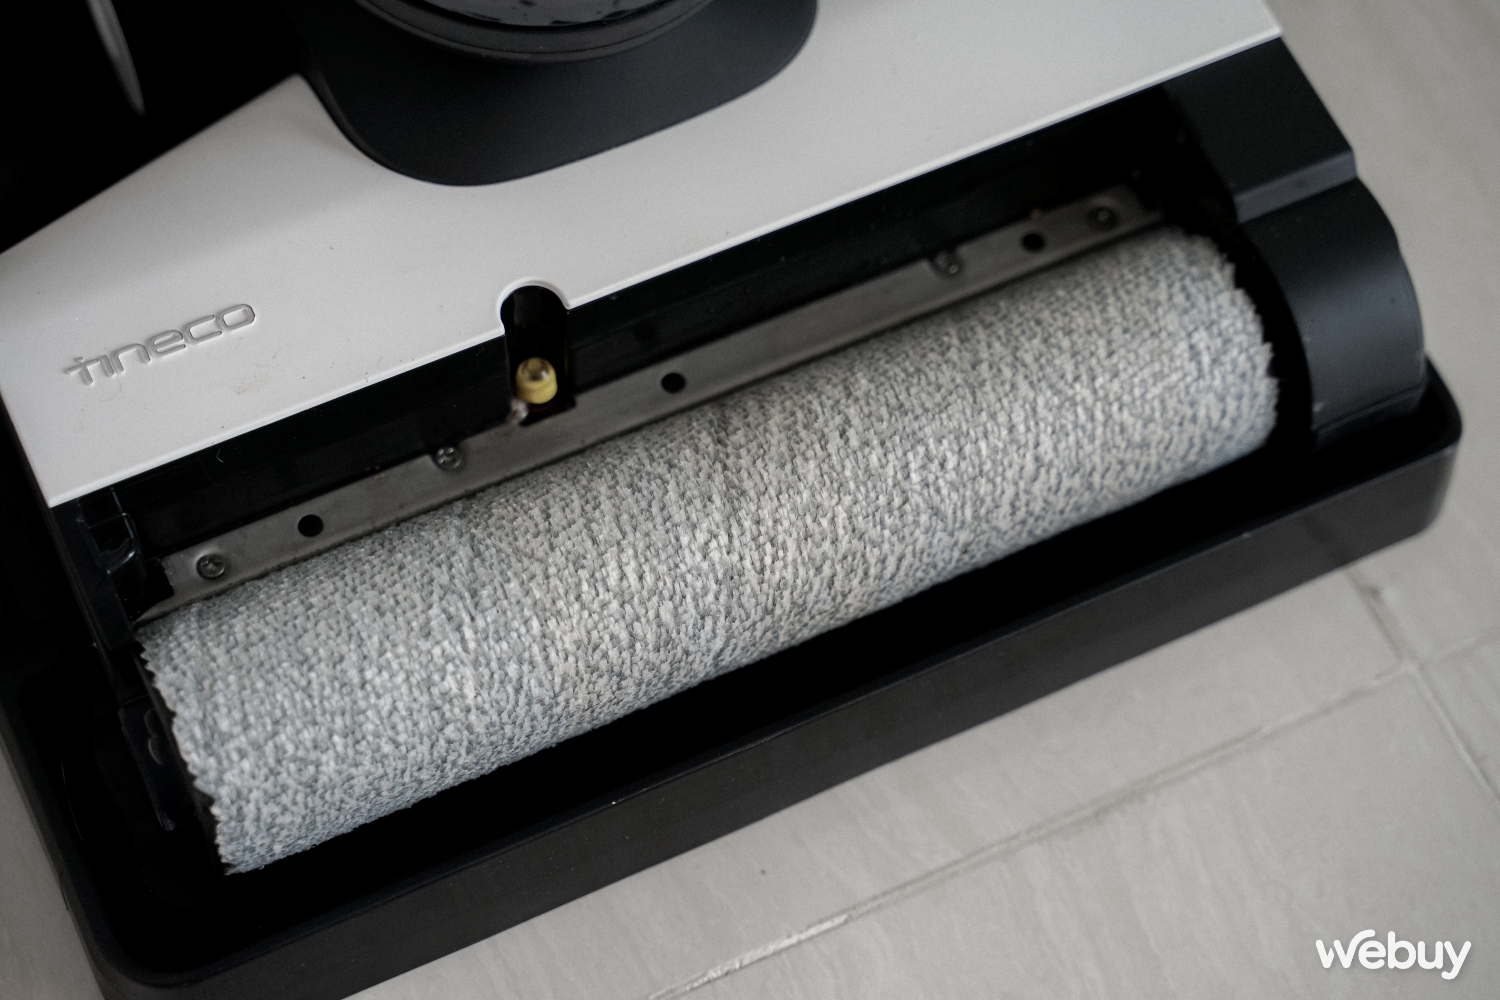 Trải nghiệm máy lau hút Tineco Floor One S5 Pro 2: Sạch cả vết bẩn ướt, tự  giặt giẻ, đắt nhưng xắt ra miếng